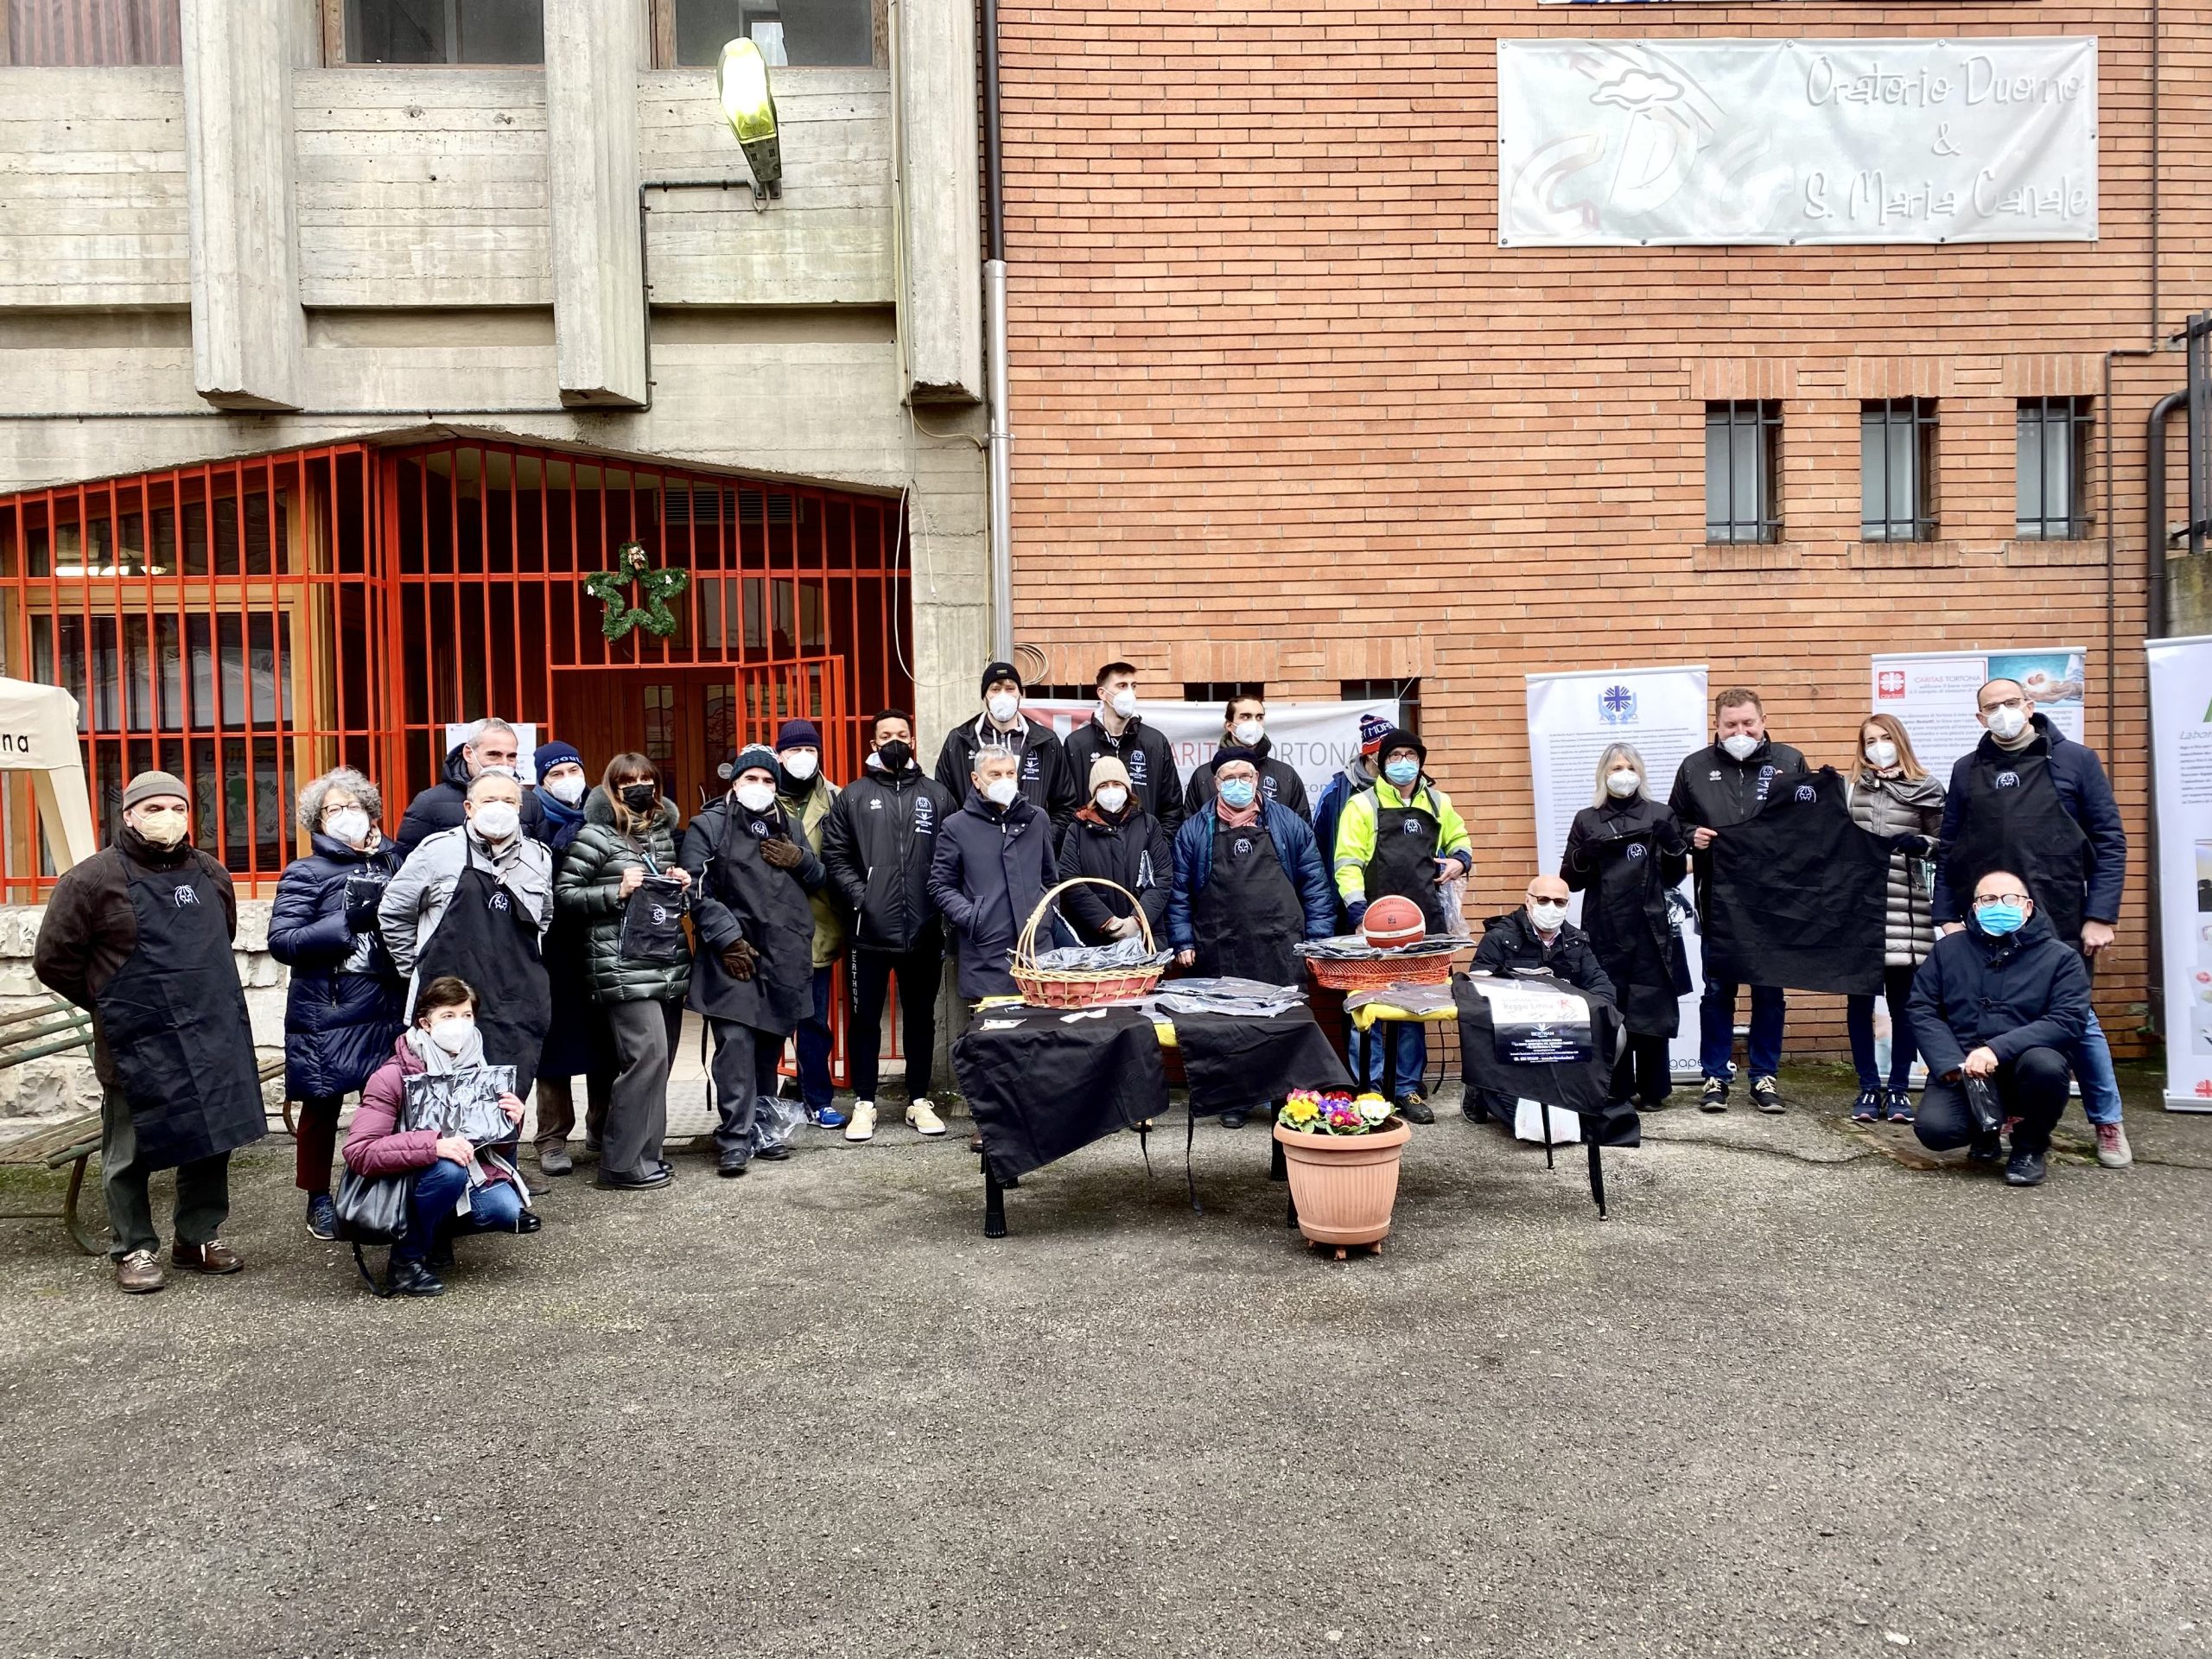 Derthona Basket al fianco della Mensa Solidale di Tortona: regalati i grembiuli ai volontari